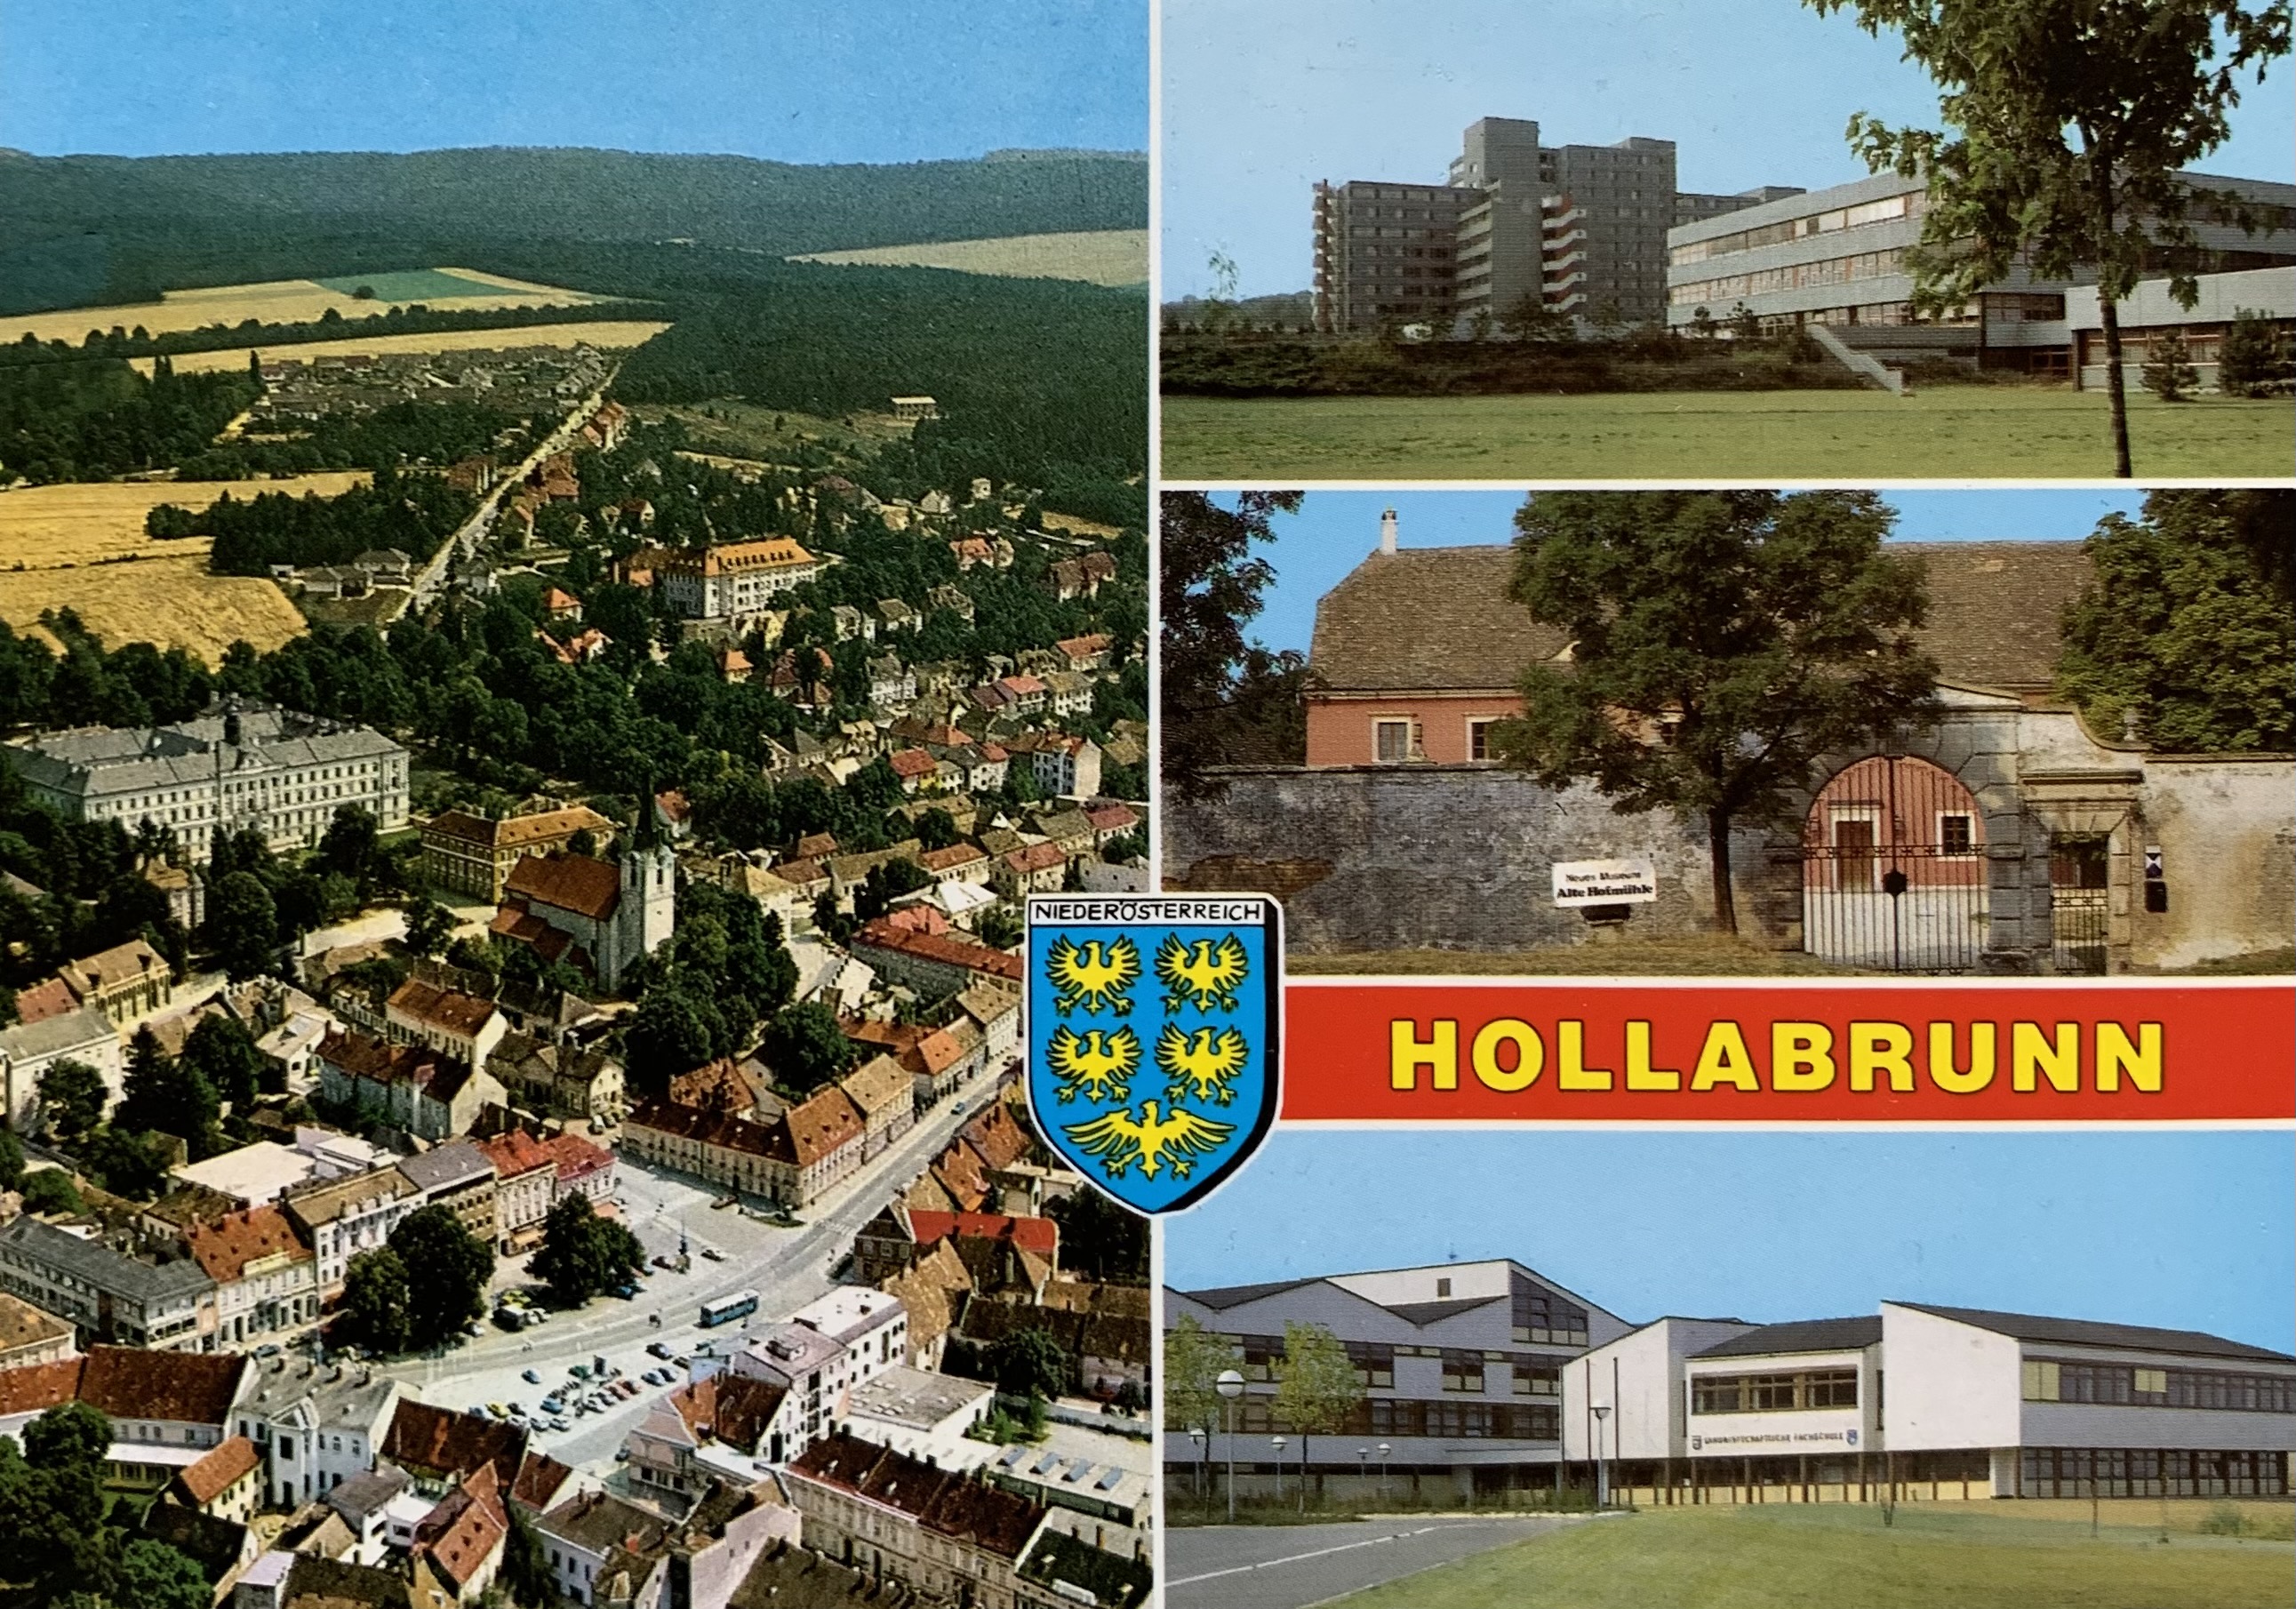 AK - Hollabrunn 01-2020-2237